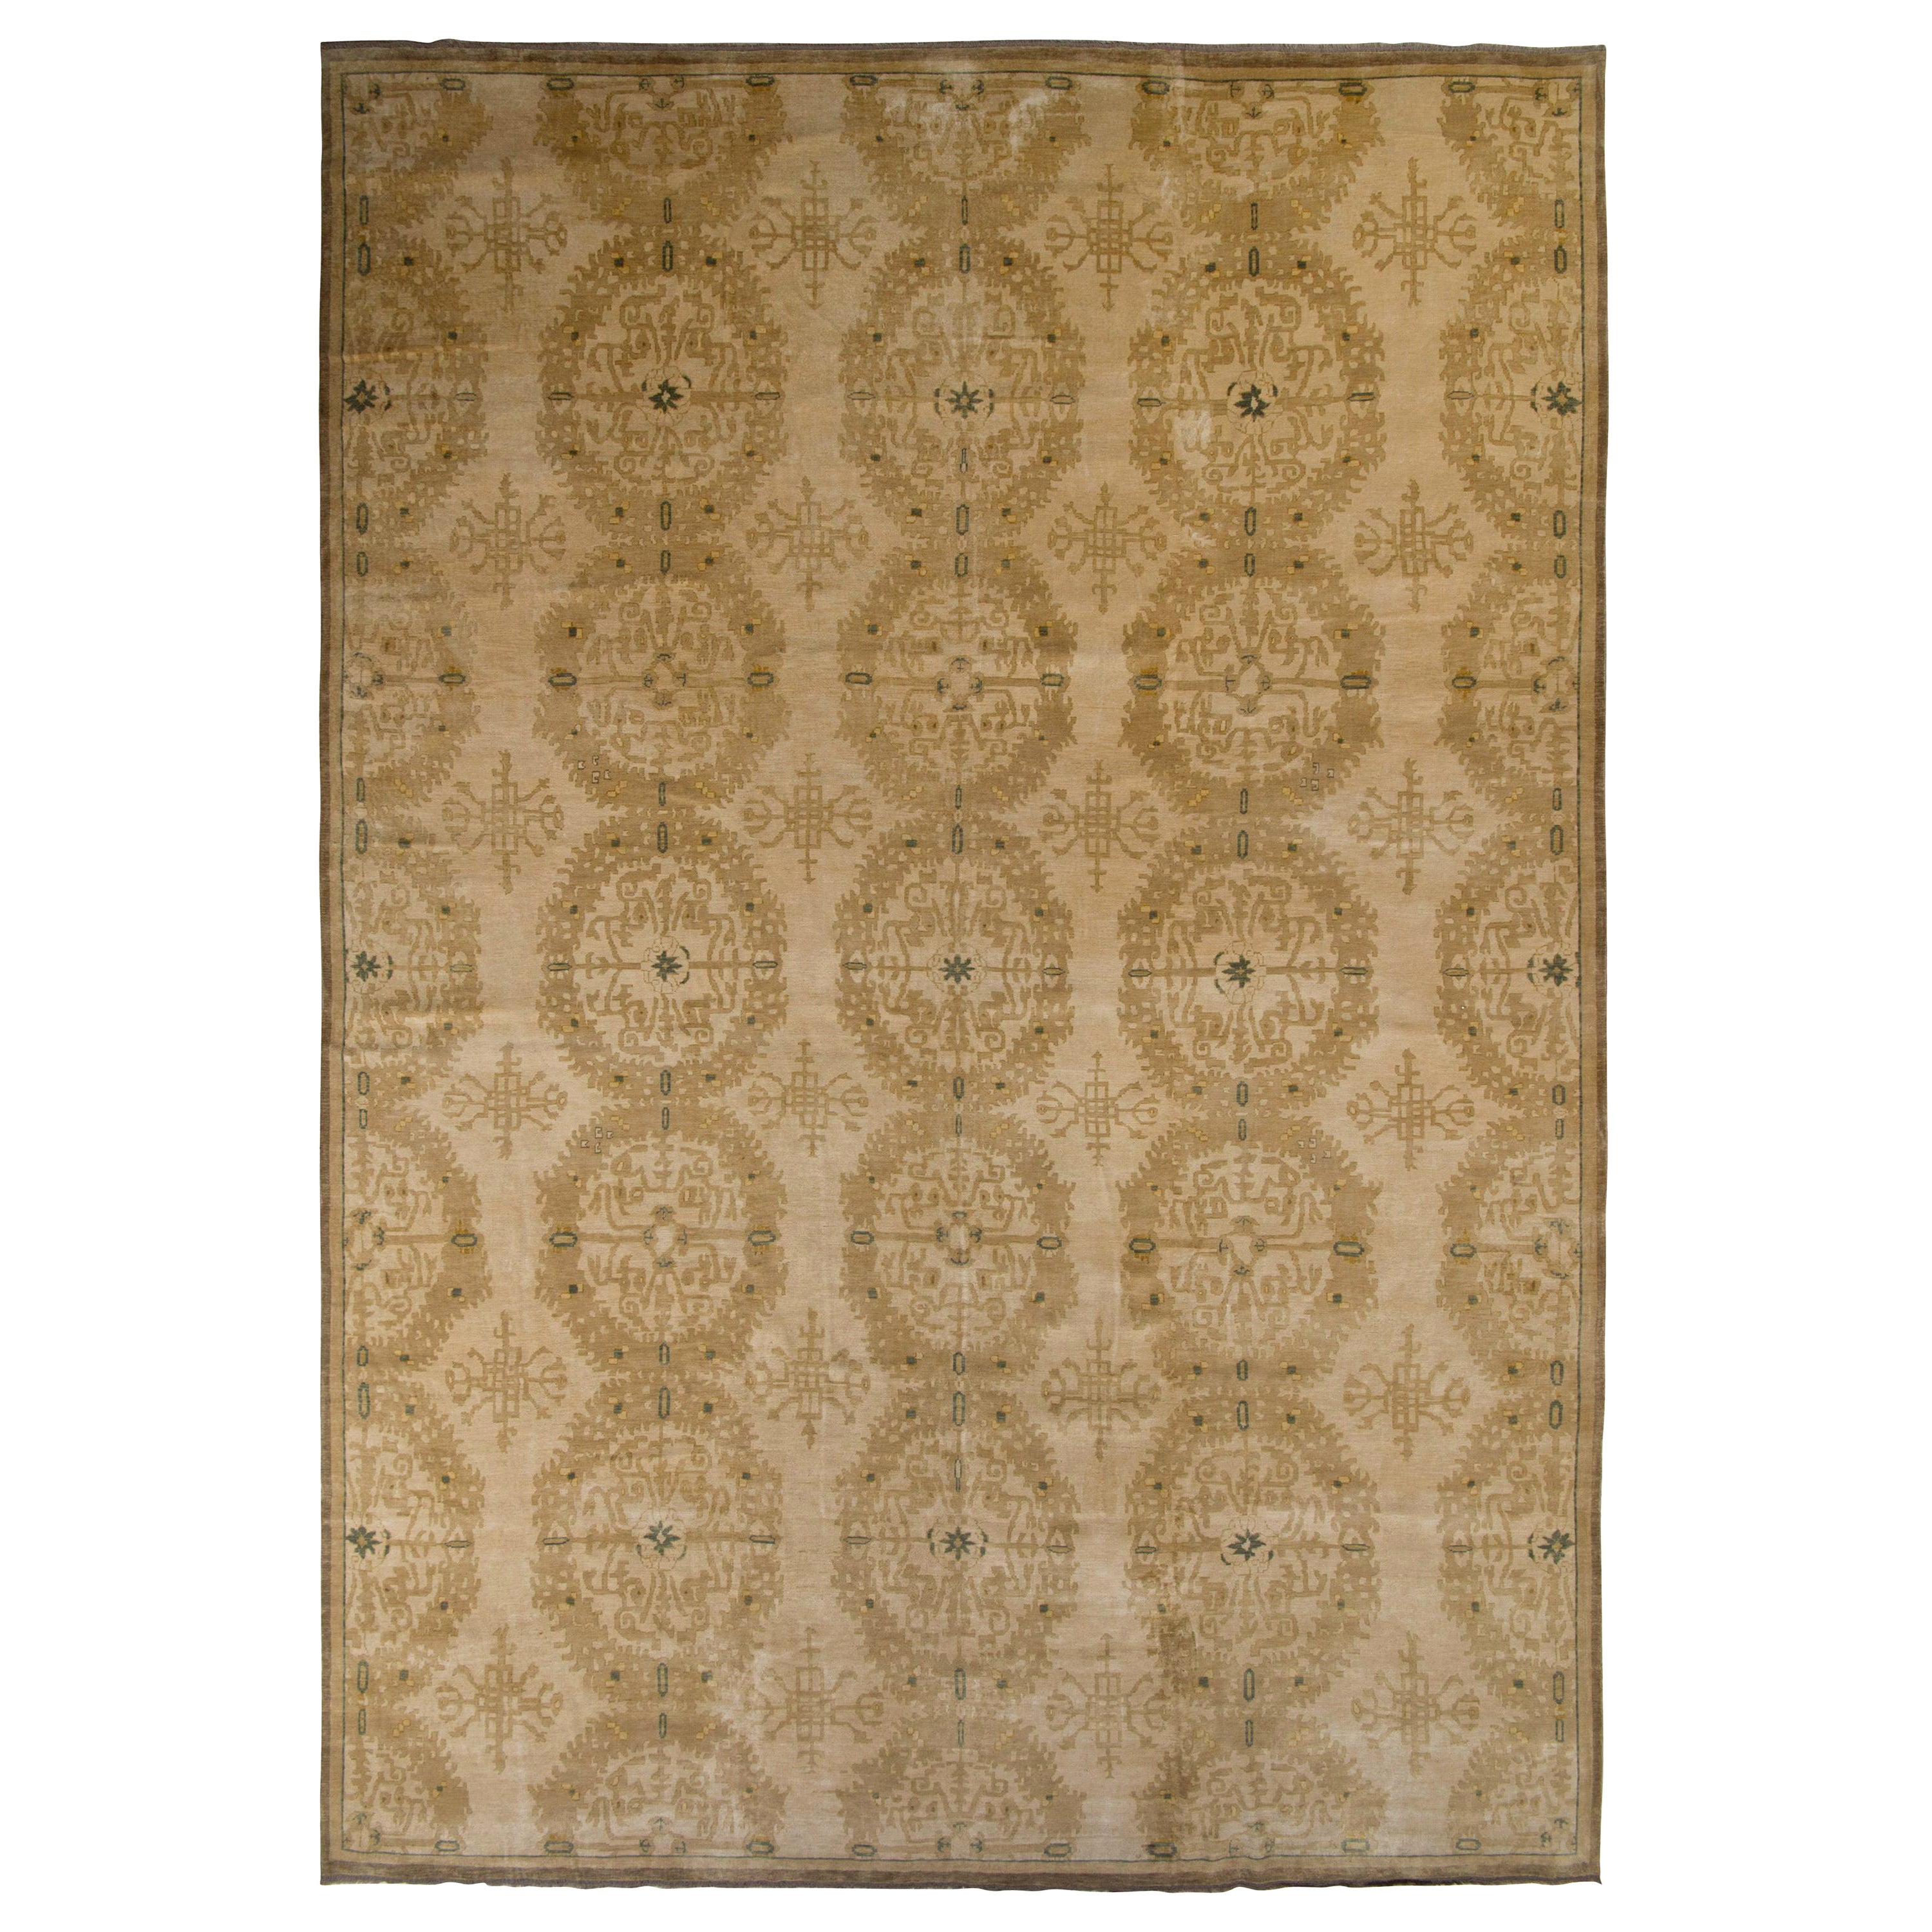 Rug & Kilim's Europäischer Stil Teppich in Beige Brown Medaillon-Muster